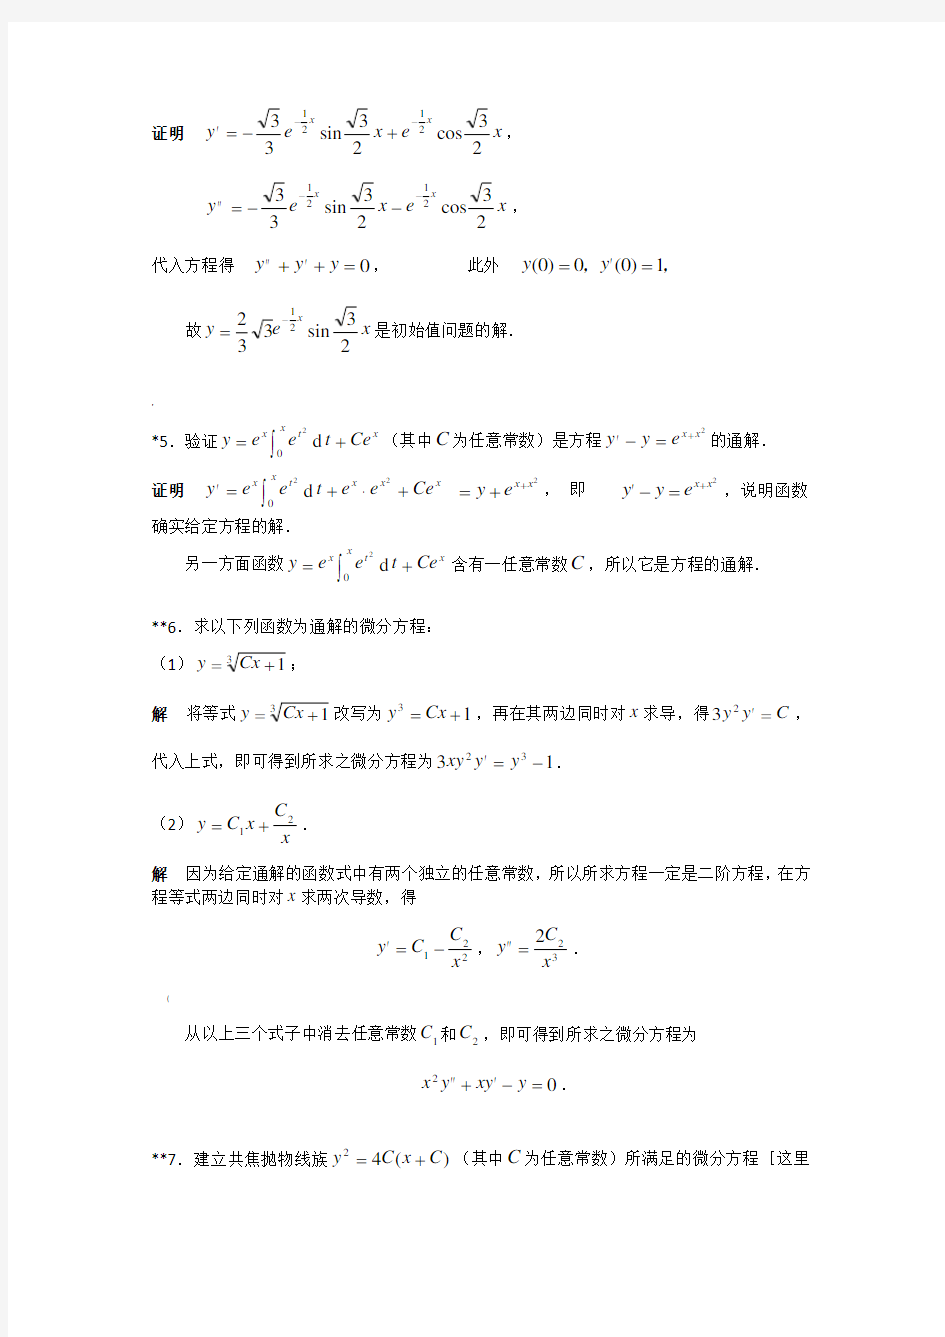 华东理工大学高等数学(下册)第9章作业答案